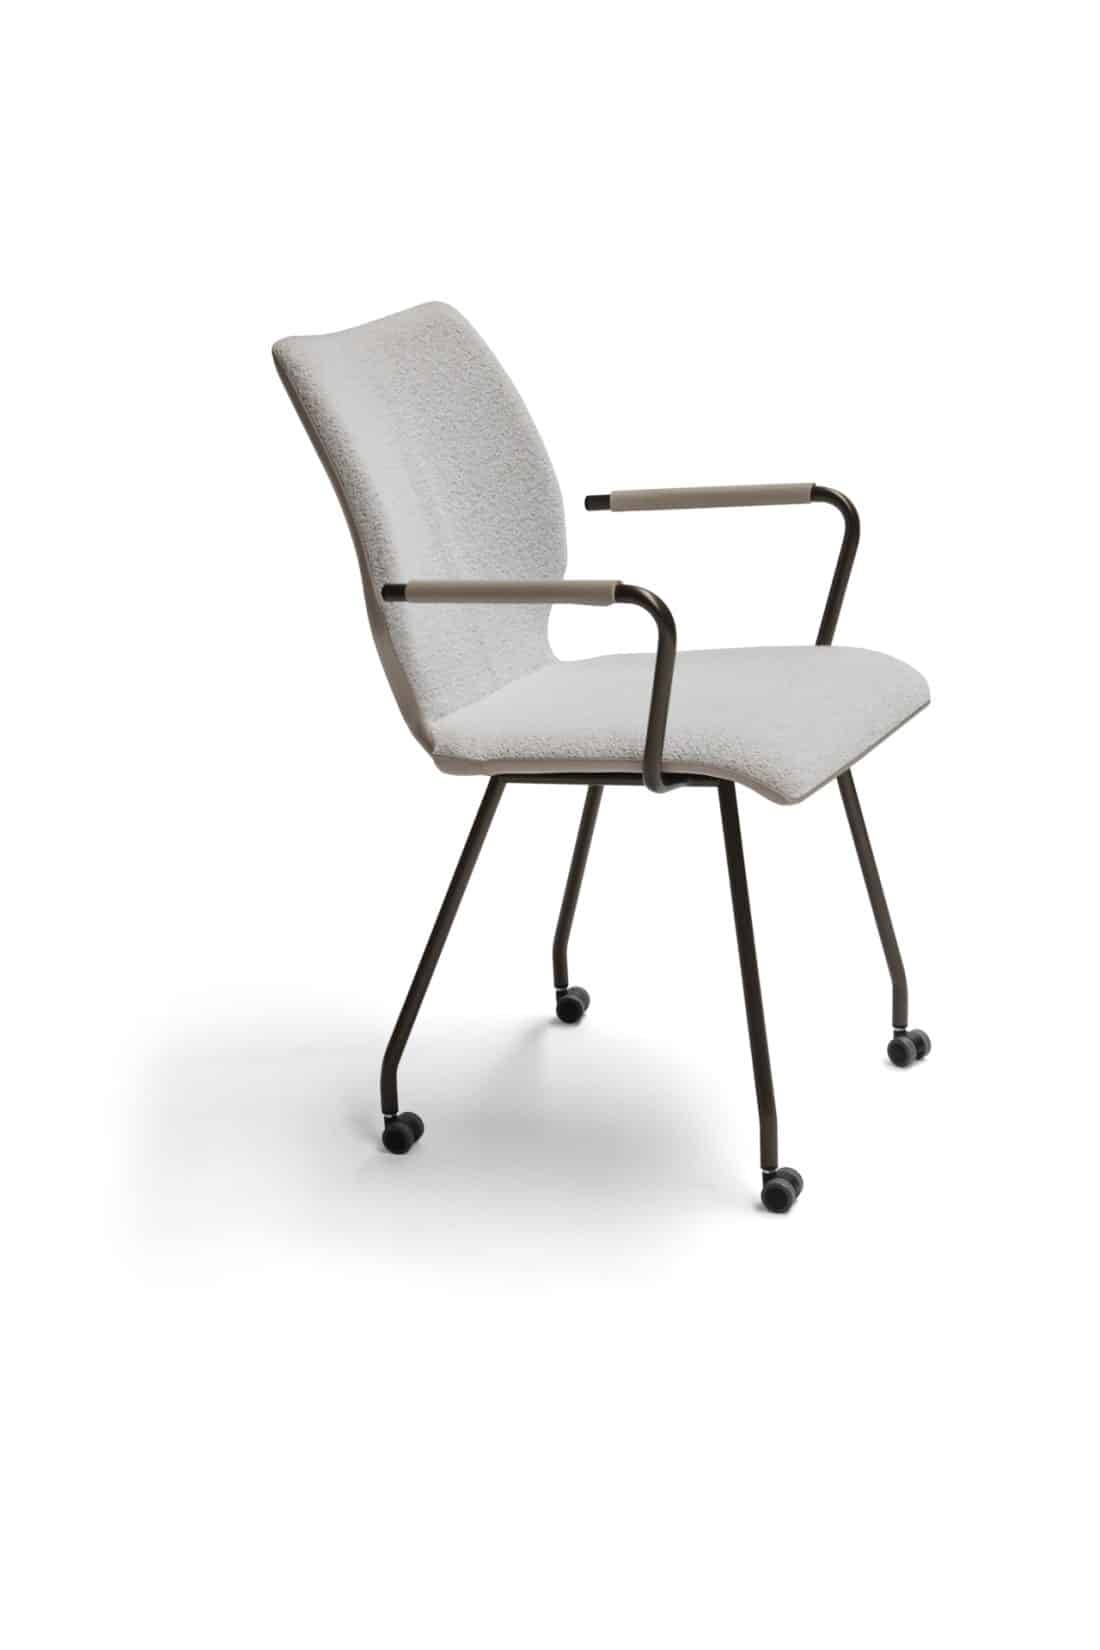 Santiarm Dining Chair With Armrest Wheels Beige White Breesnewworld